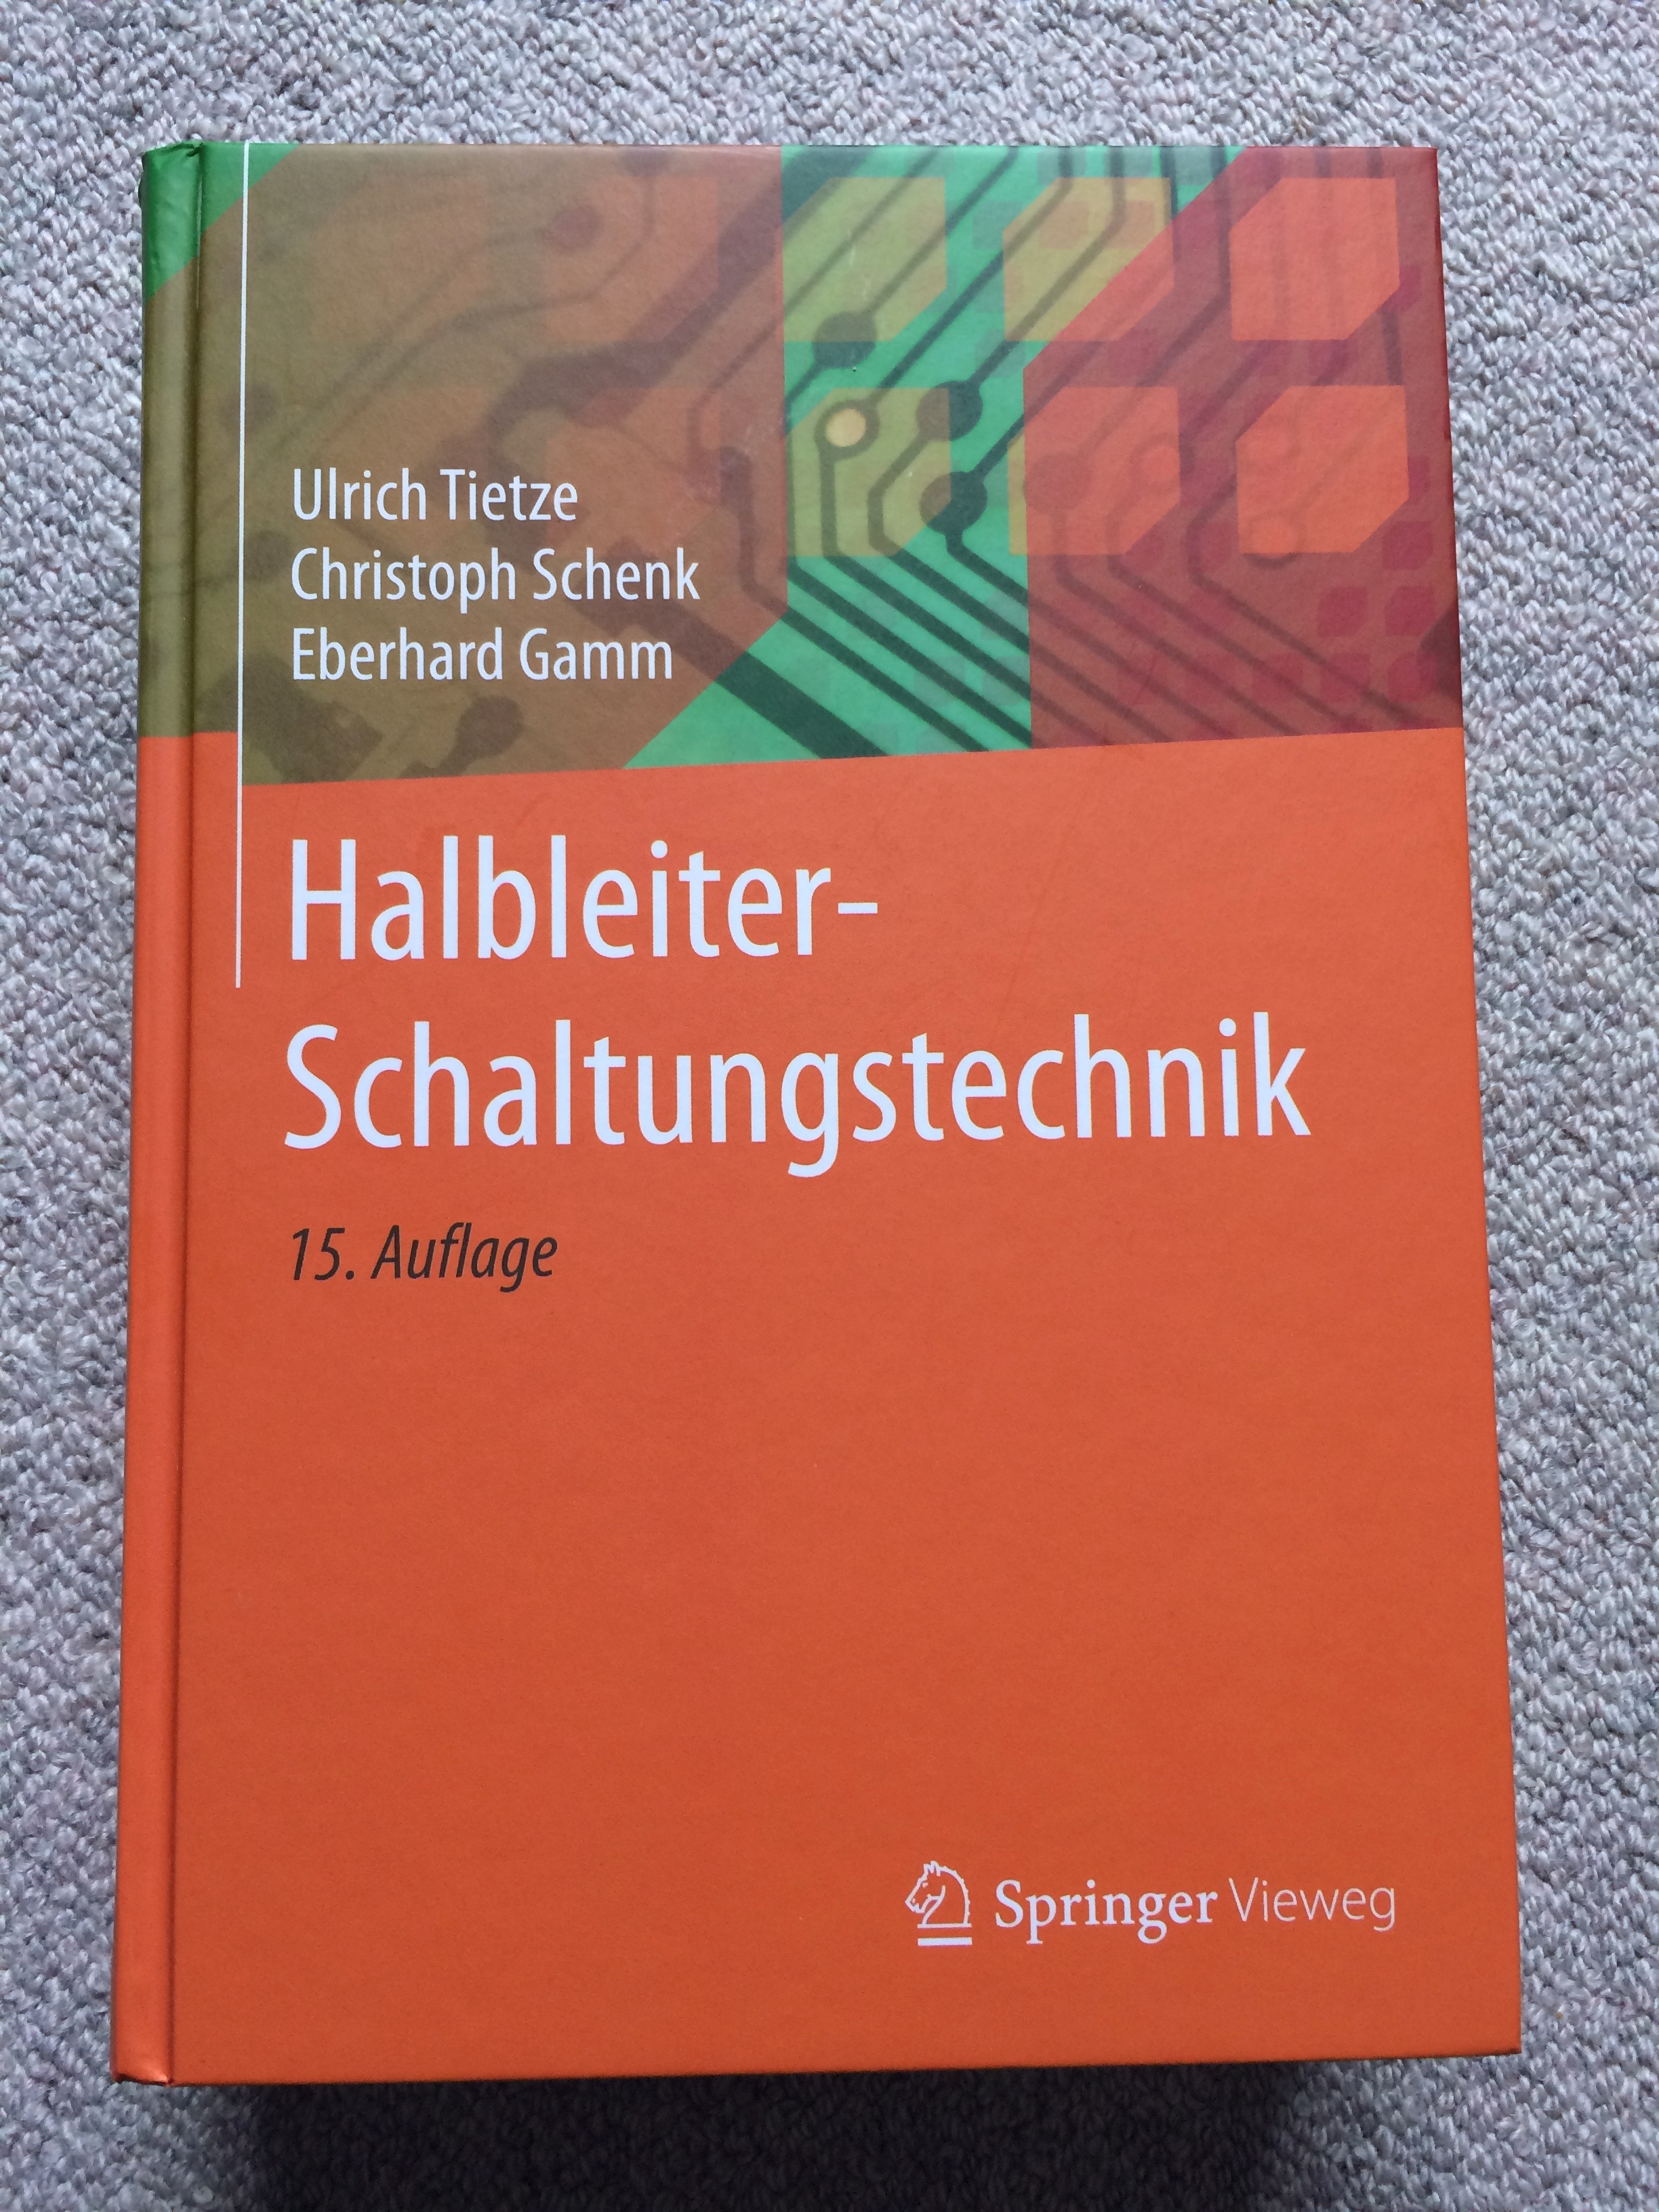 V) Buch Halbleiter Schaltungstechnik Tietze, Schenk, Gamm -  Mikrocontroller.net